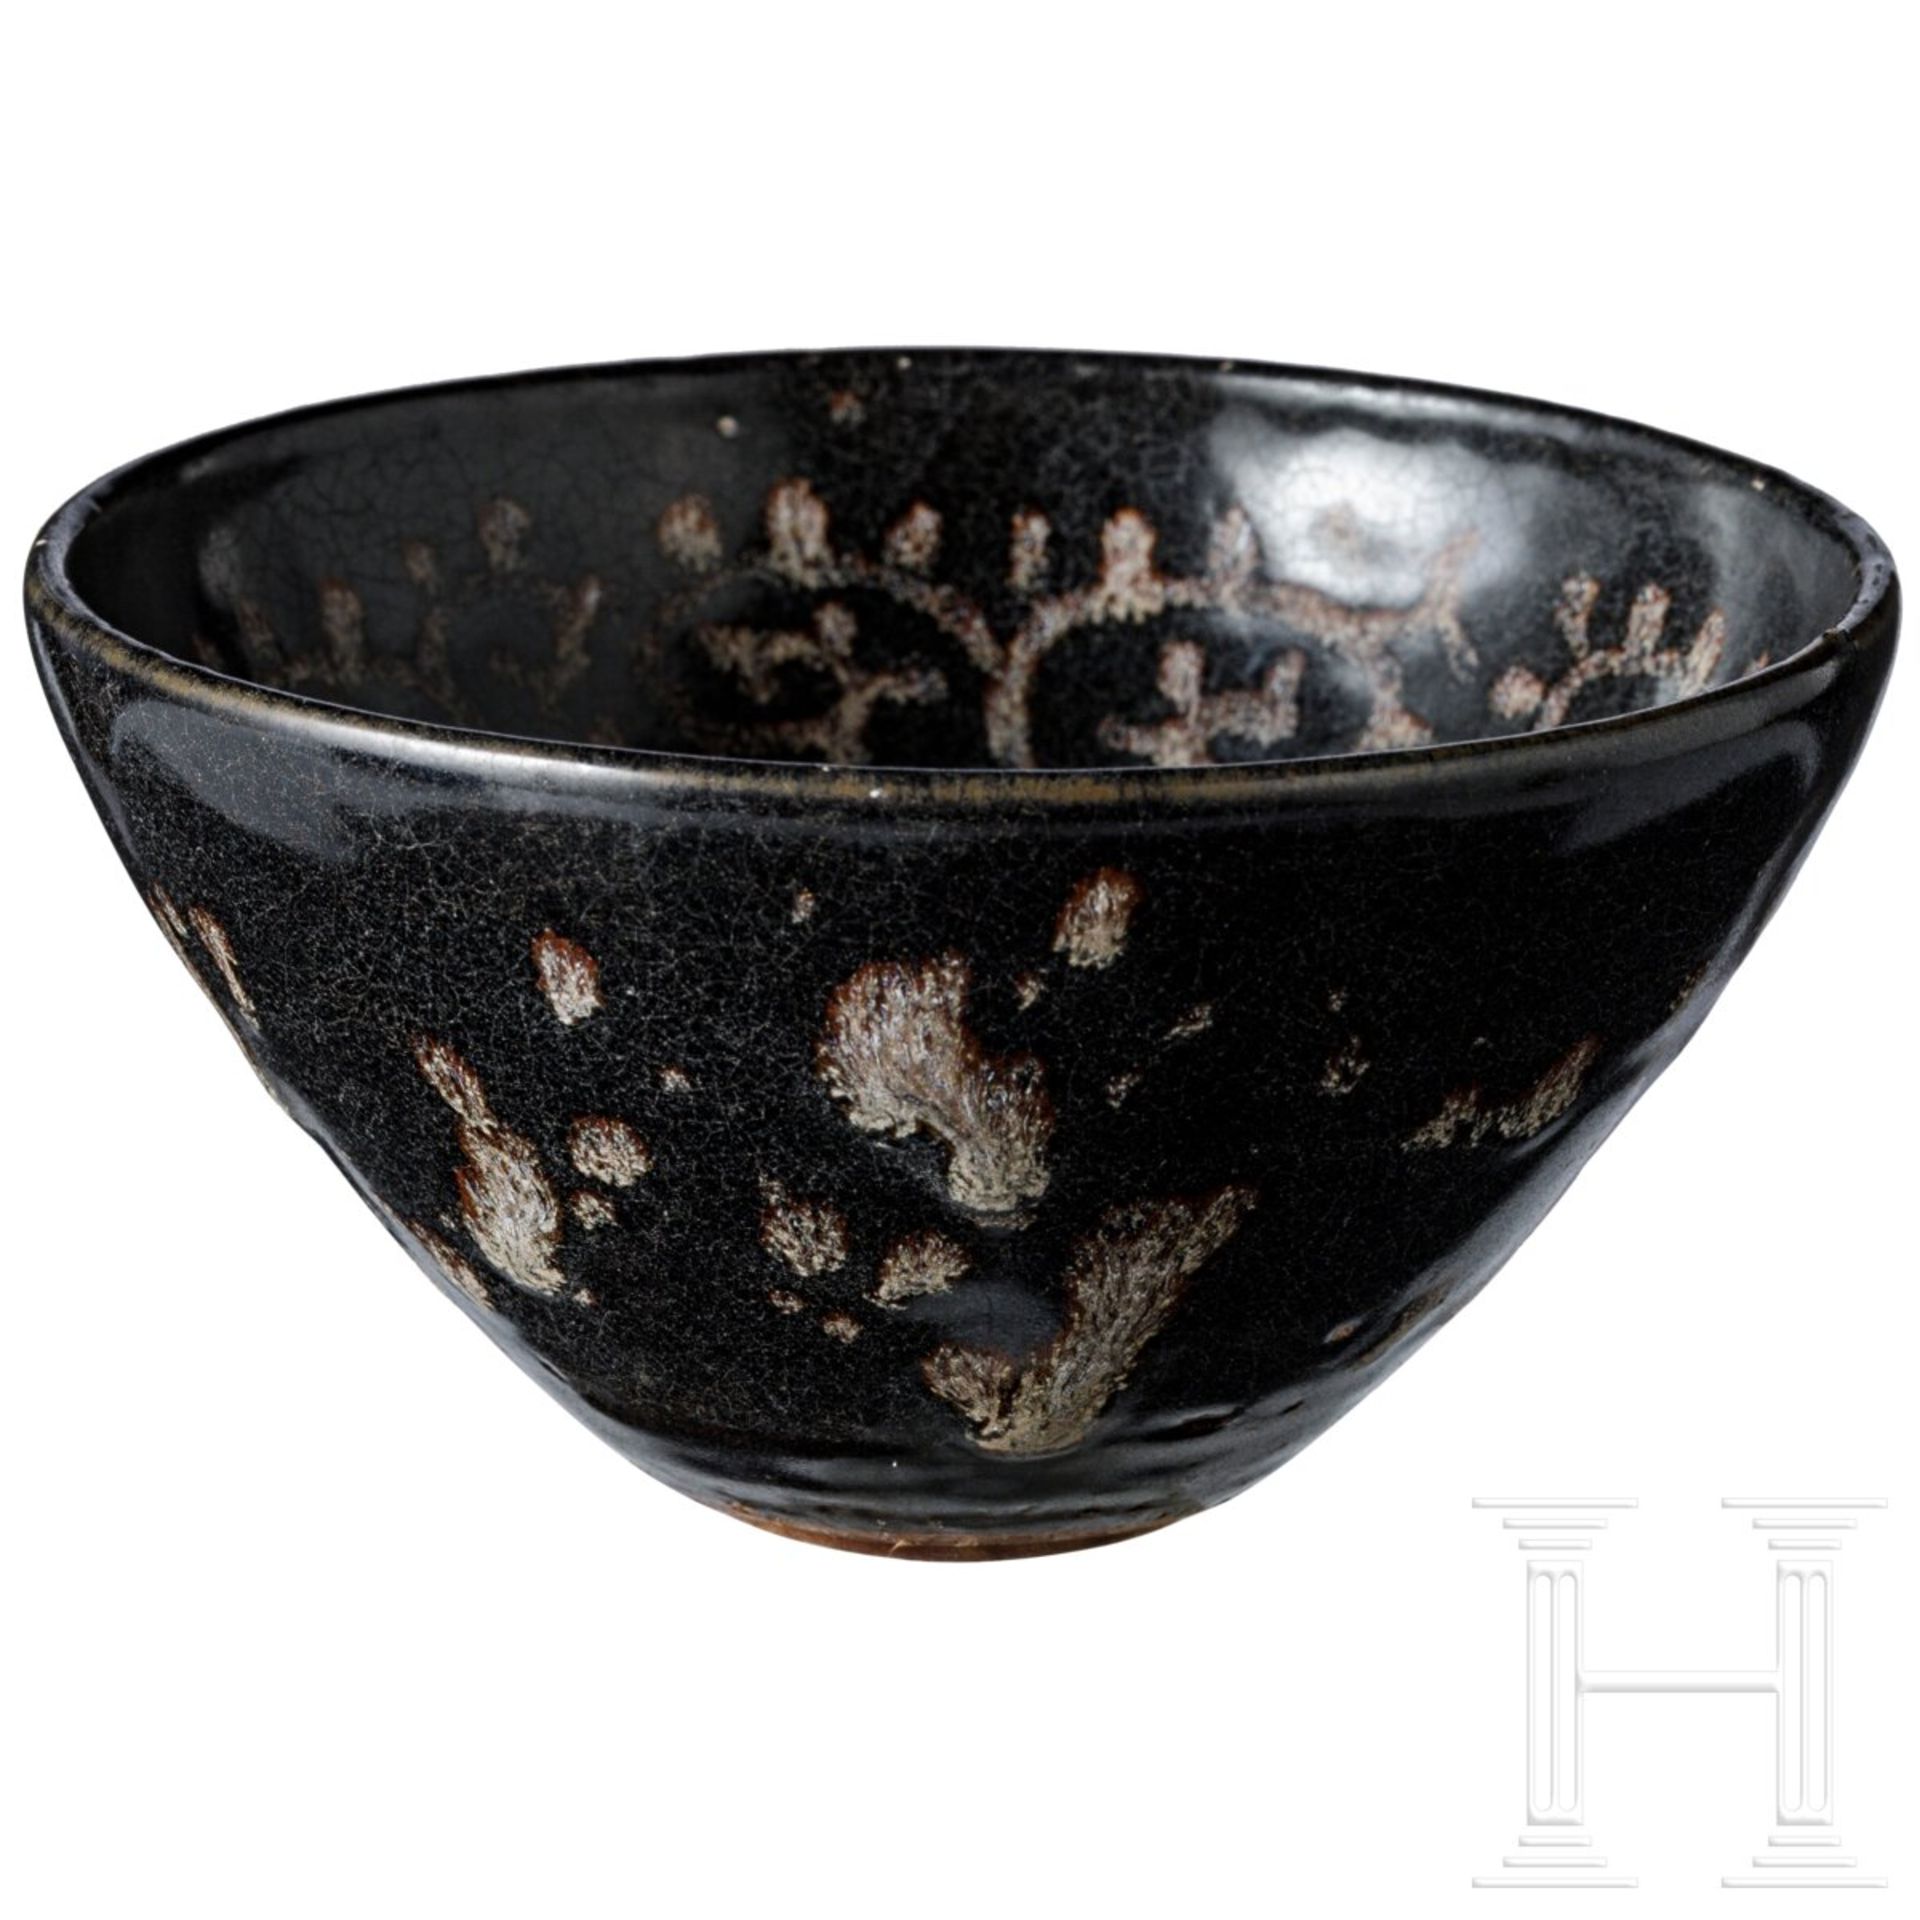 Sehr seltene Teeschale, bemalt im Jizhou-Tixi-Stil, südliche Song-/Yuan-Dynastie, 13. - 14. Jhdt. - Bild 4 aus 14